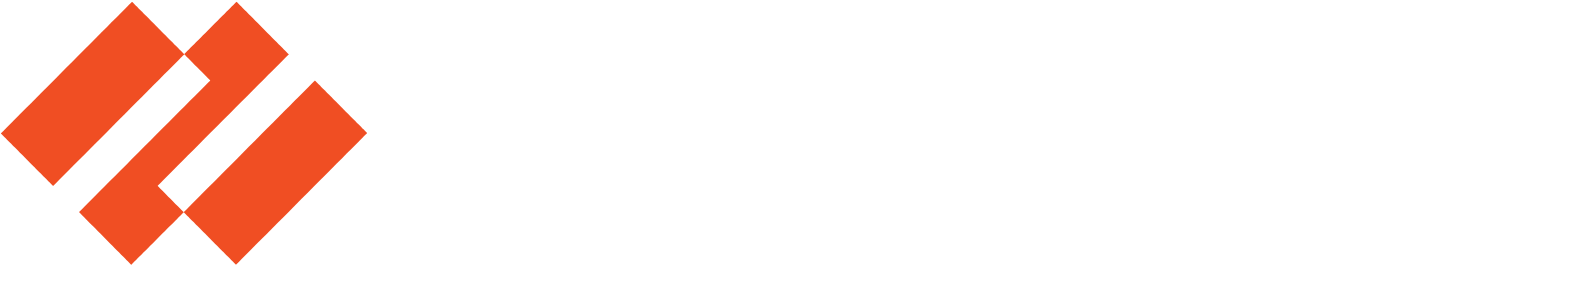 Palo Alto Networks
 logo large for dark backgrounds (transparent PNG)